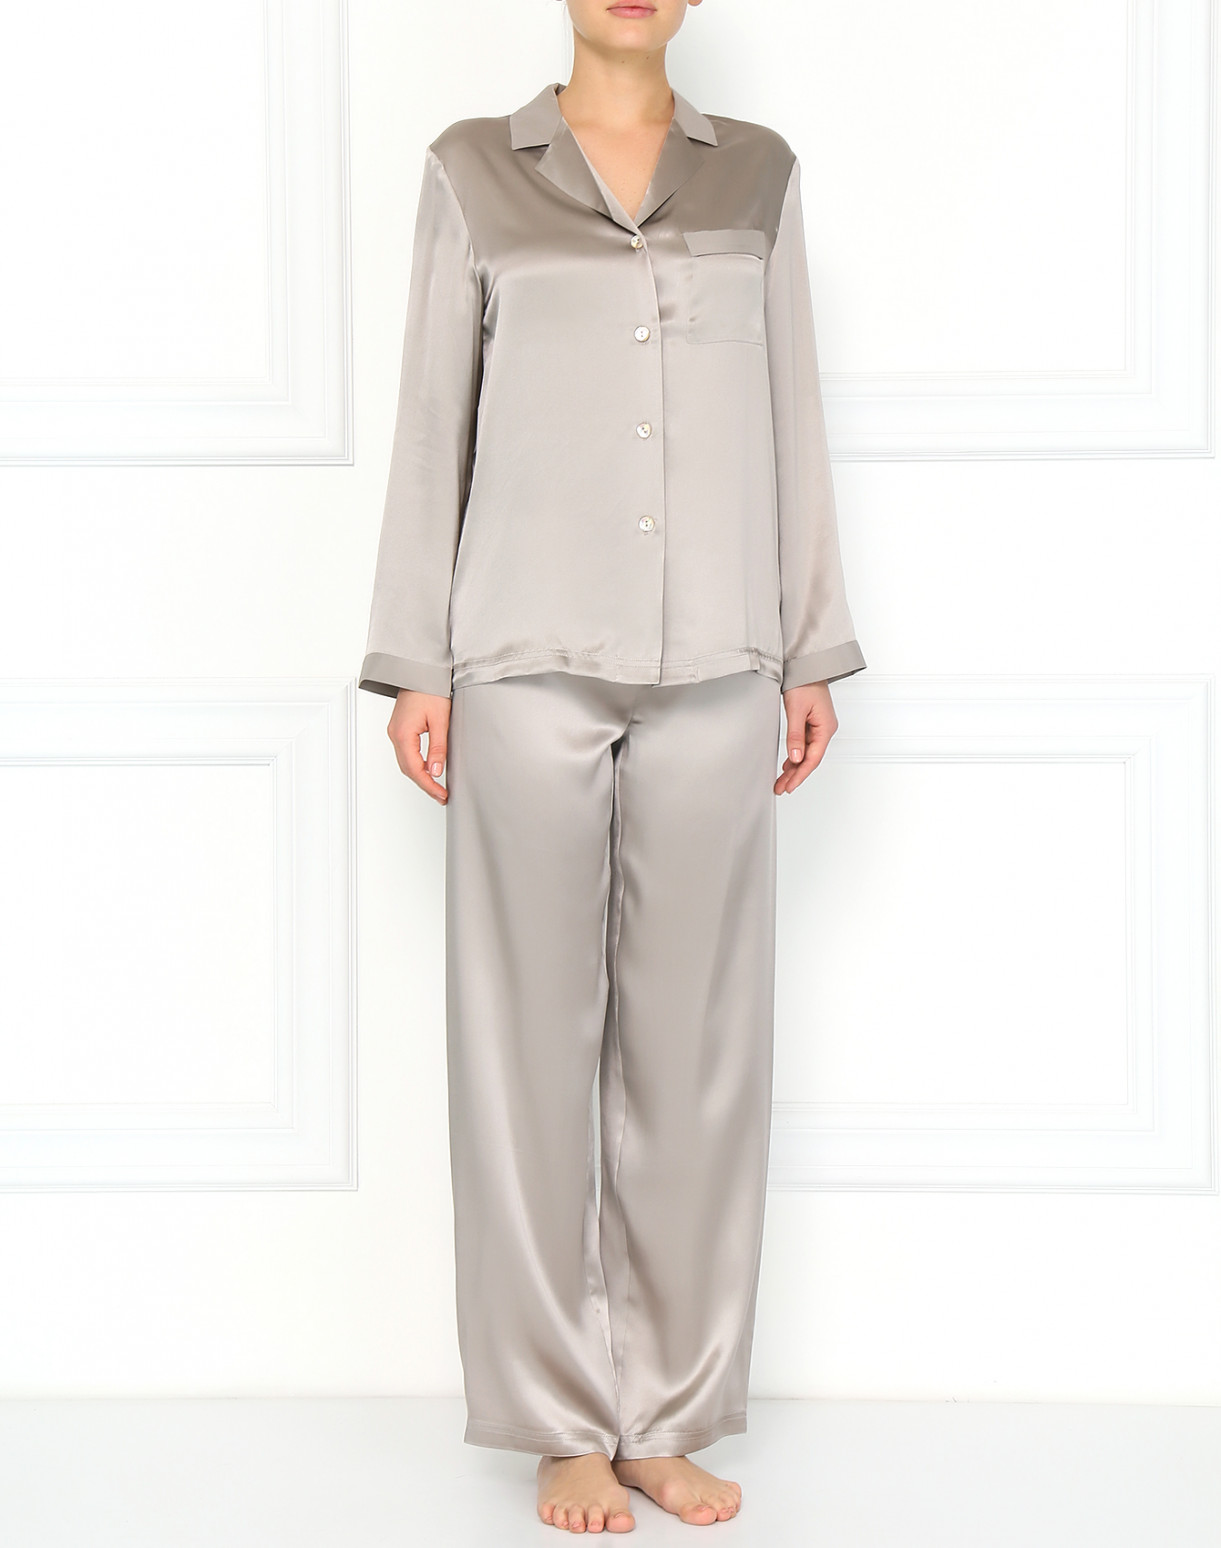 Пижама из шелка Vivis  –  Модель Общий вид  – Цвет:  Серый